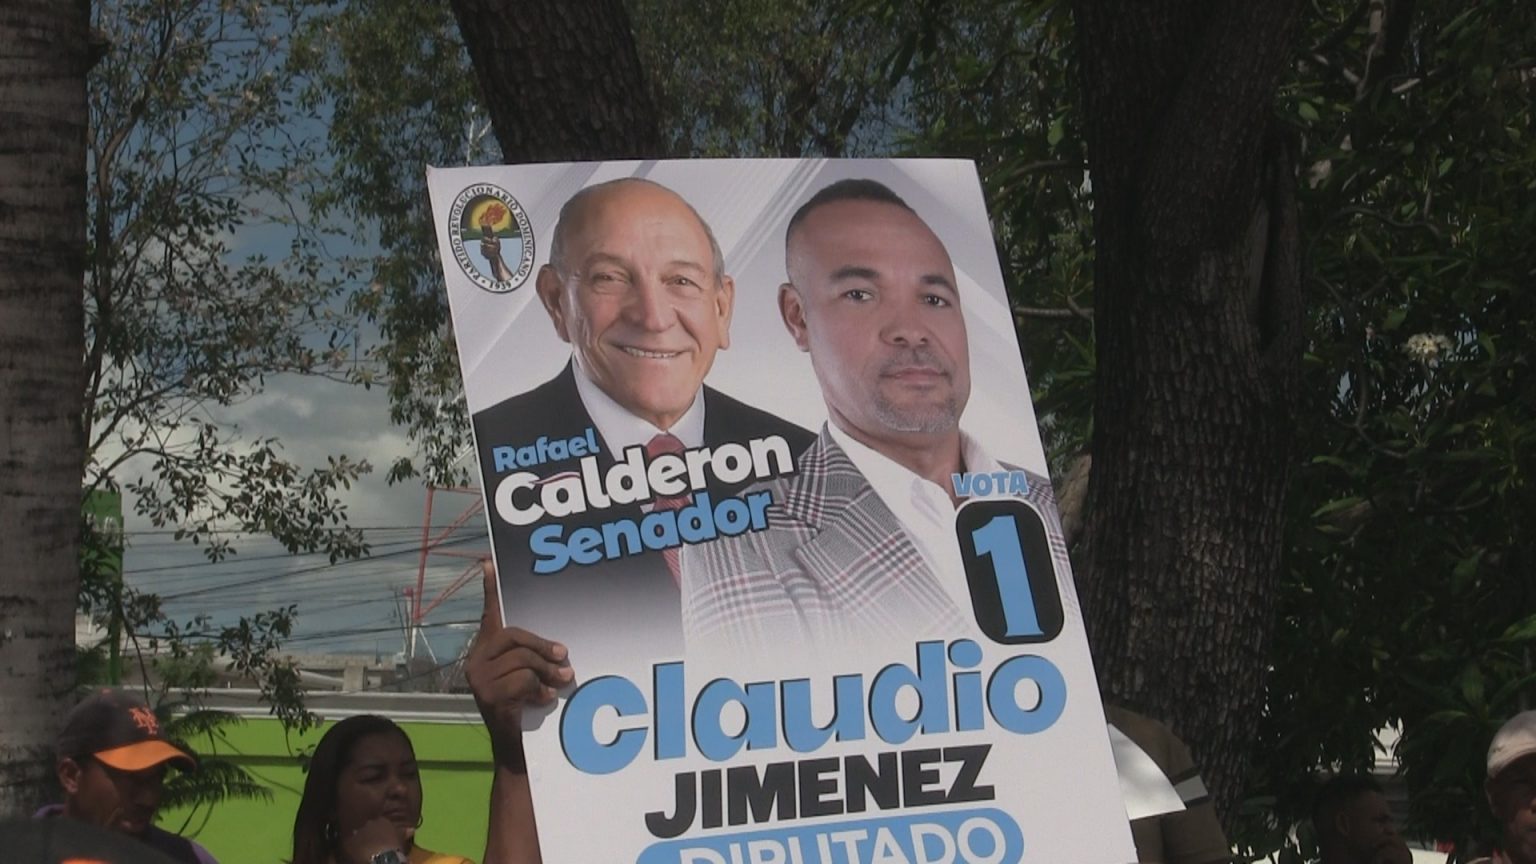 VIDEO: Alianza Rescate RD sale en defensa del candidato a senador Rafael Calderón